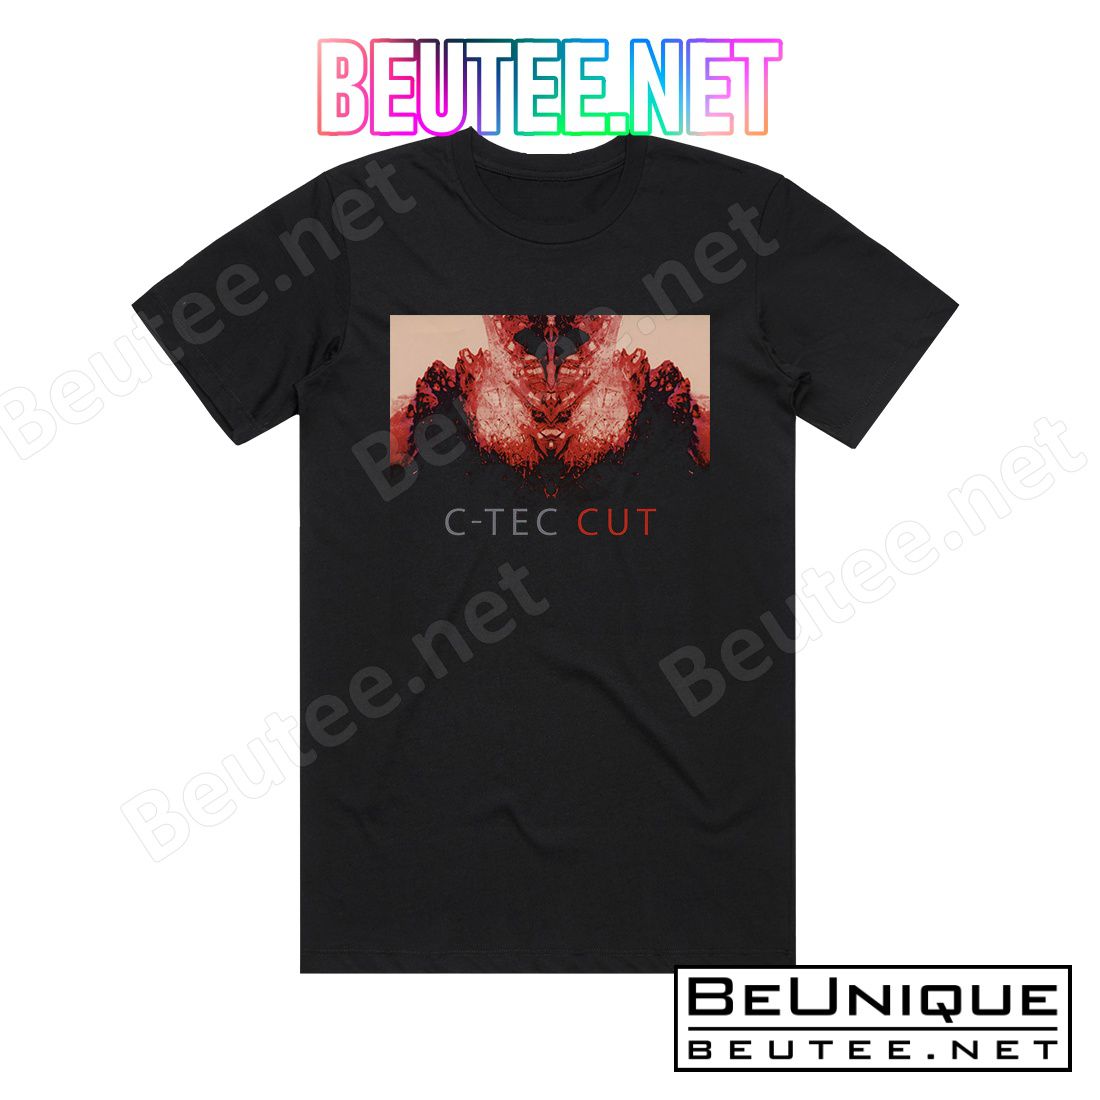 C-Tec Cut Album Cover T-Shirt